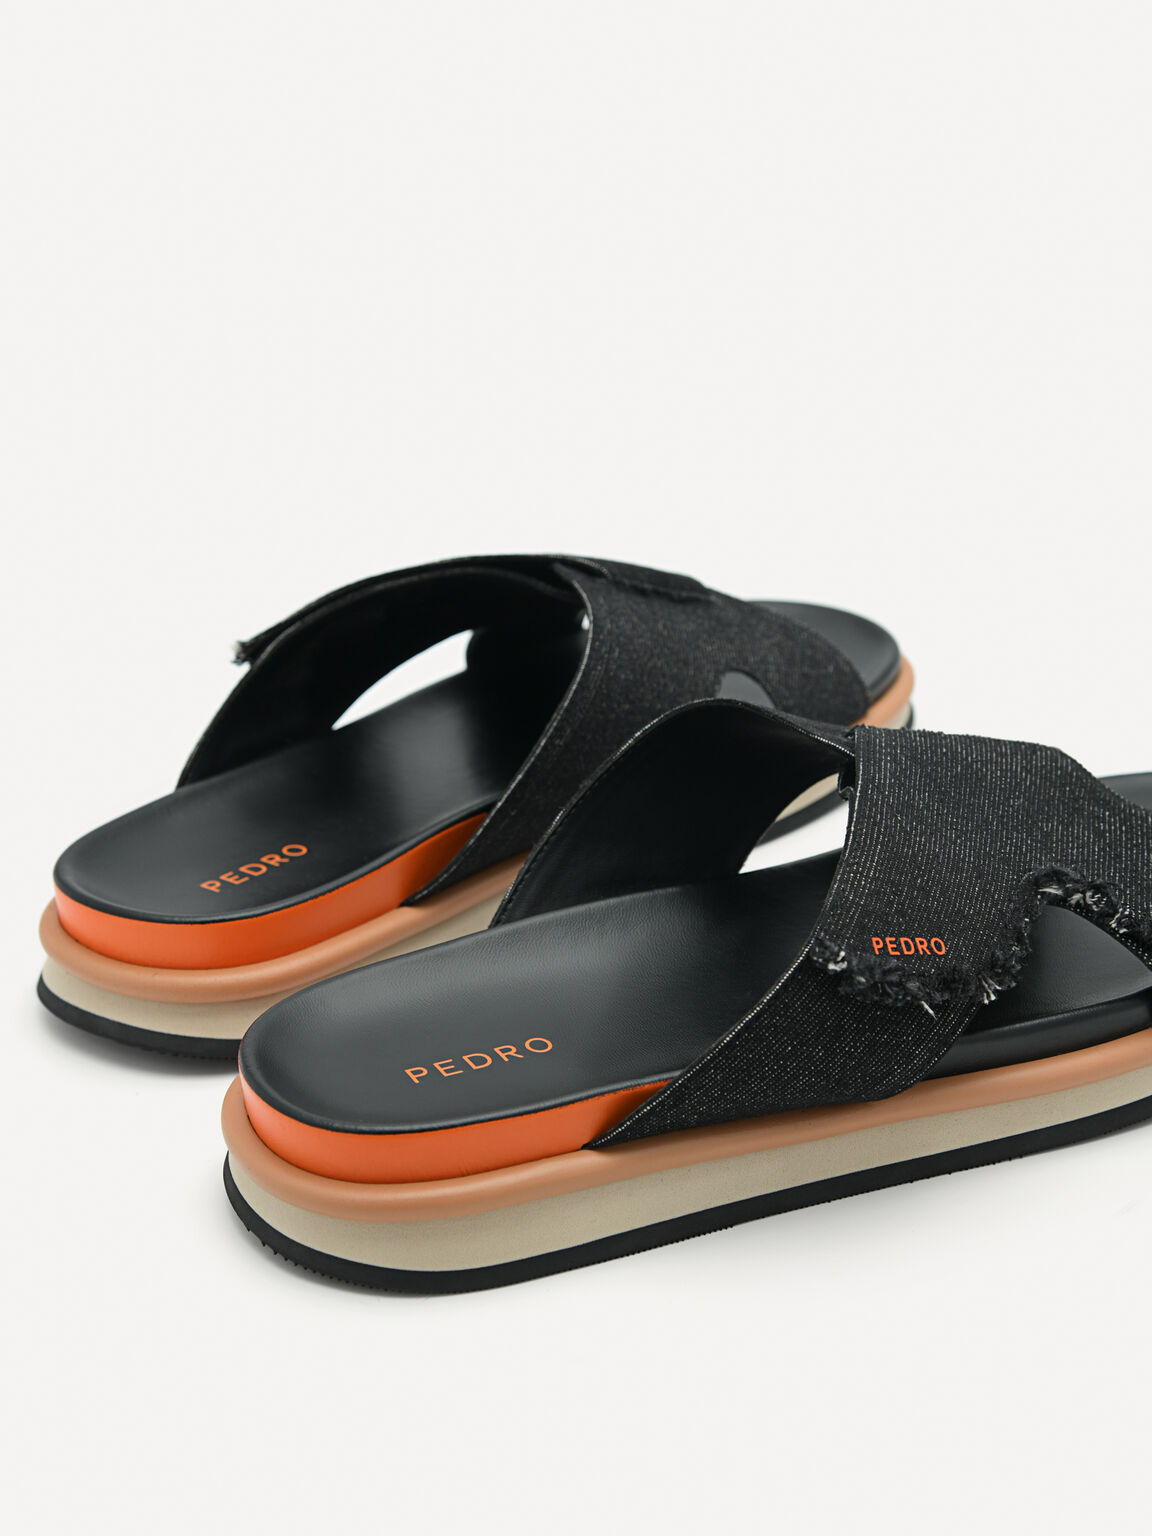 Harlin Slide Sandals, Black, hi-res